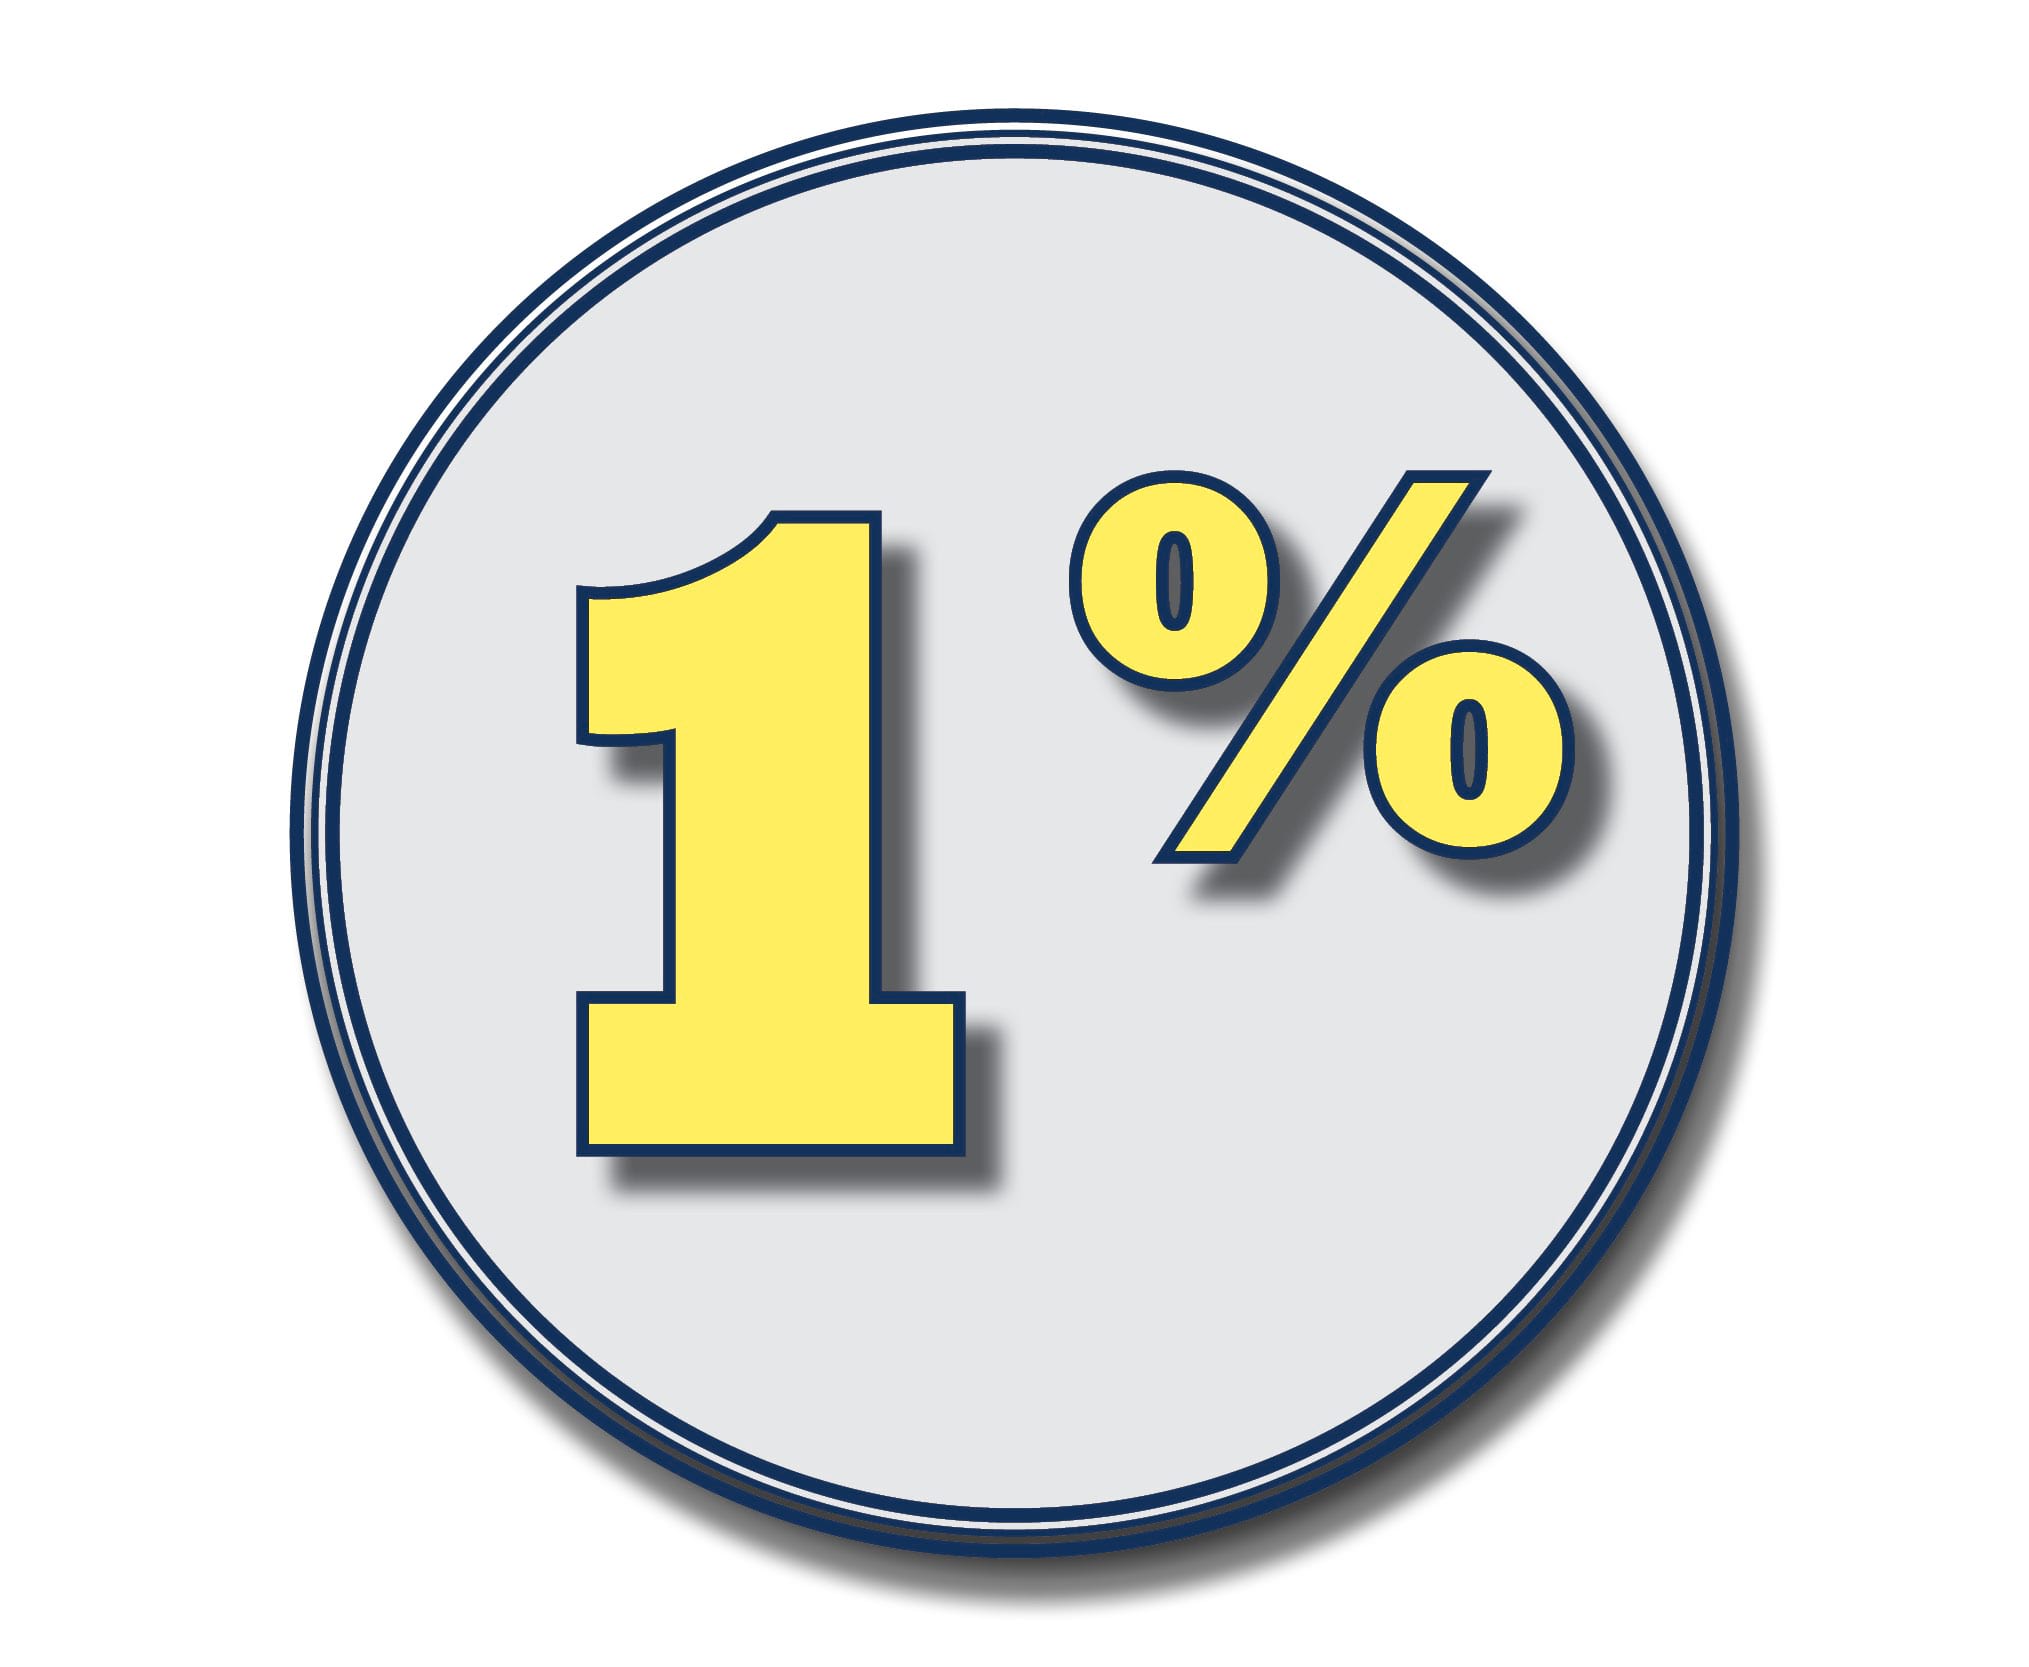 1% cash back merchant lending program